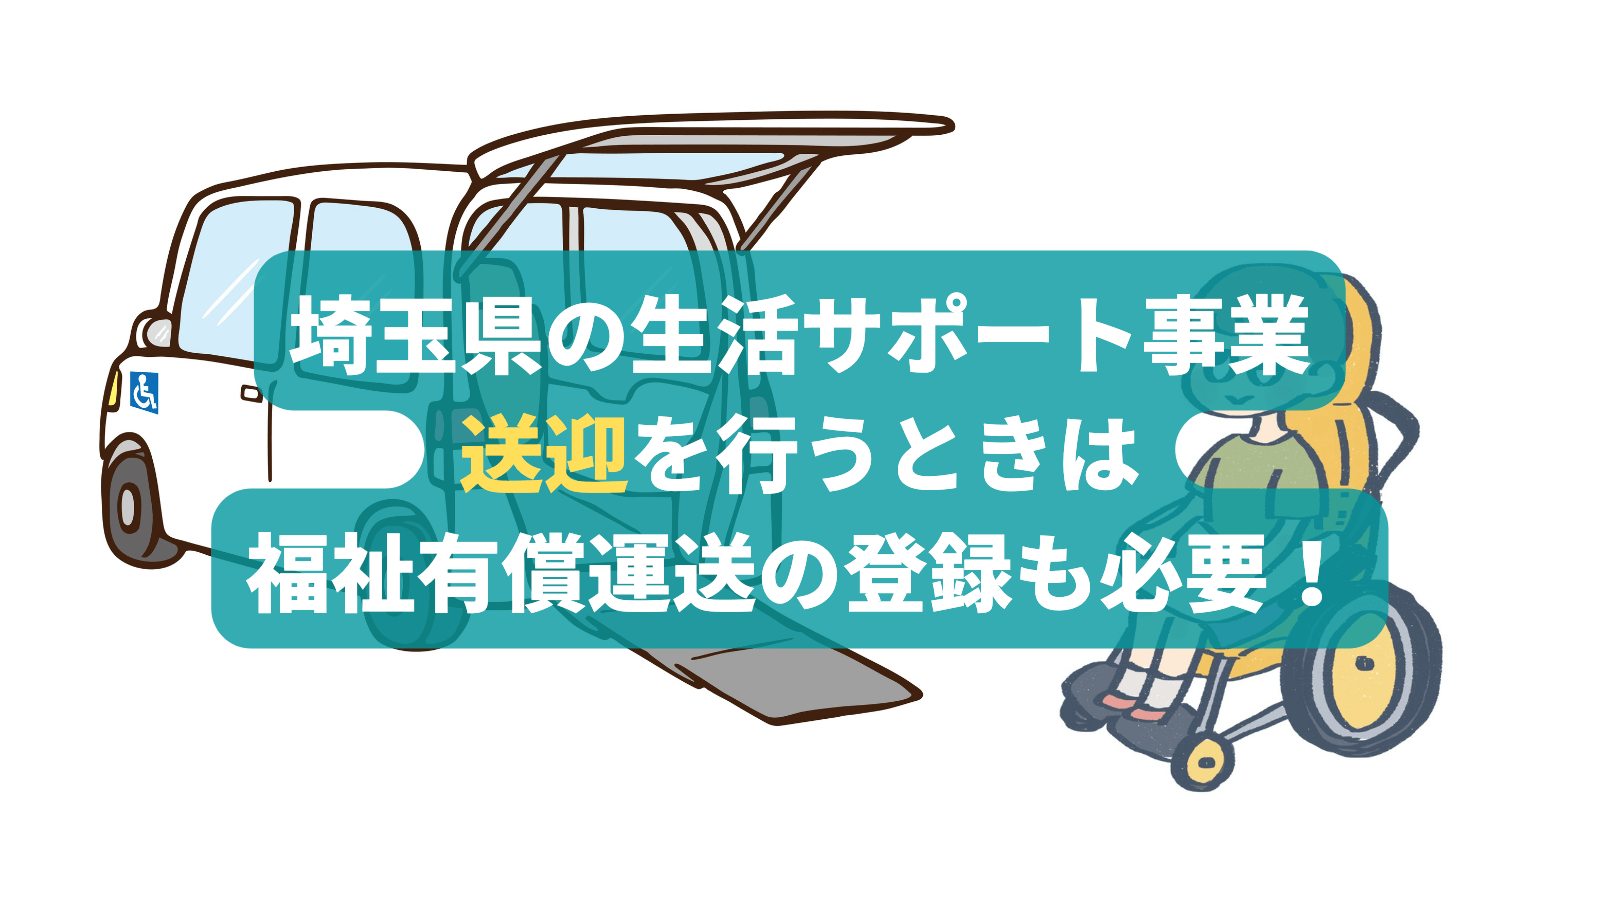 埼玉県の生活サポート事業で送迎を行うときは、福祉有償運送の登録も必要